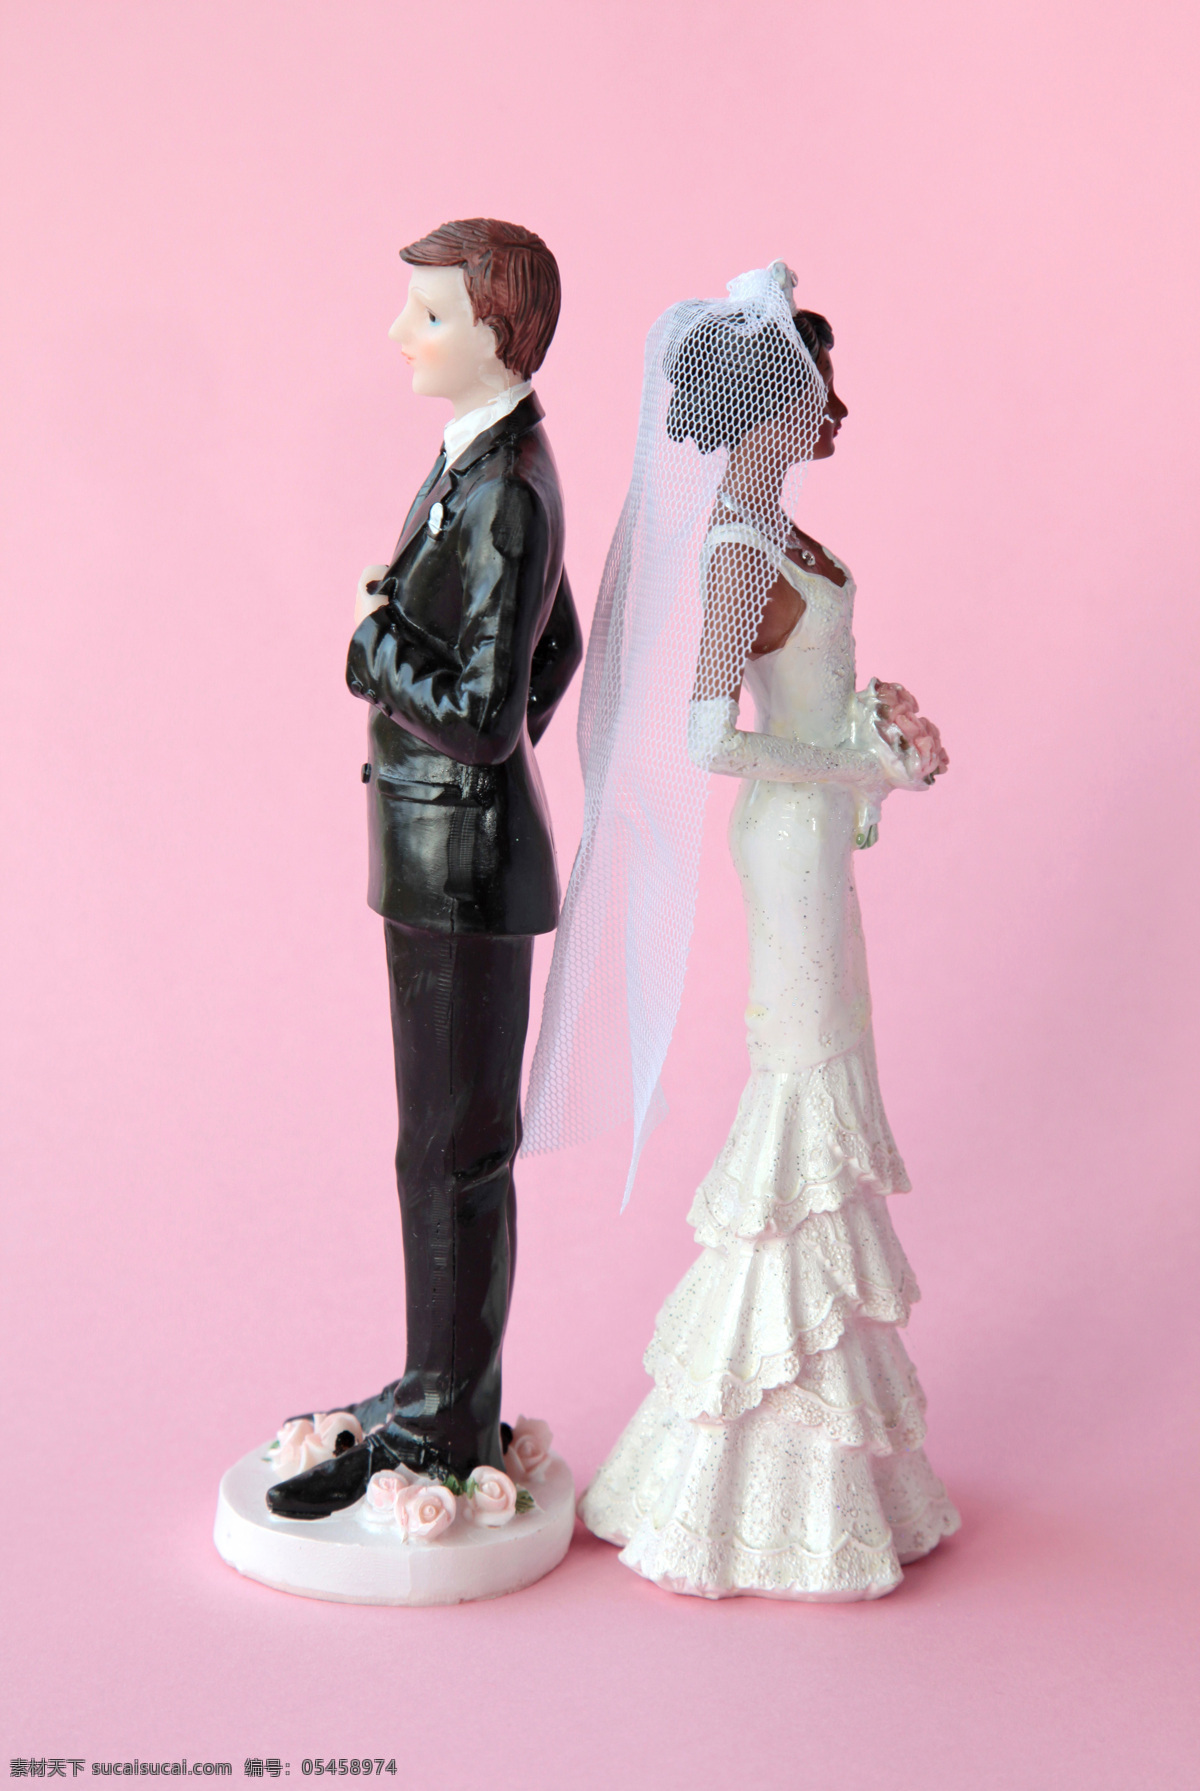 背对背 夫妻 木偶 新郎 新娘 婚姻 离婚 生活人物 人物图片